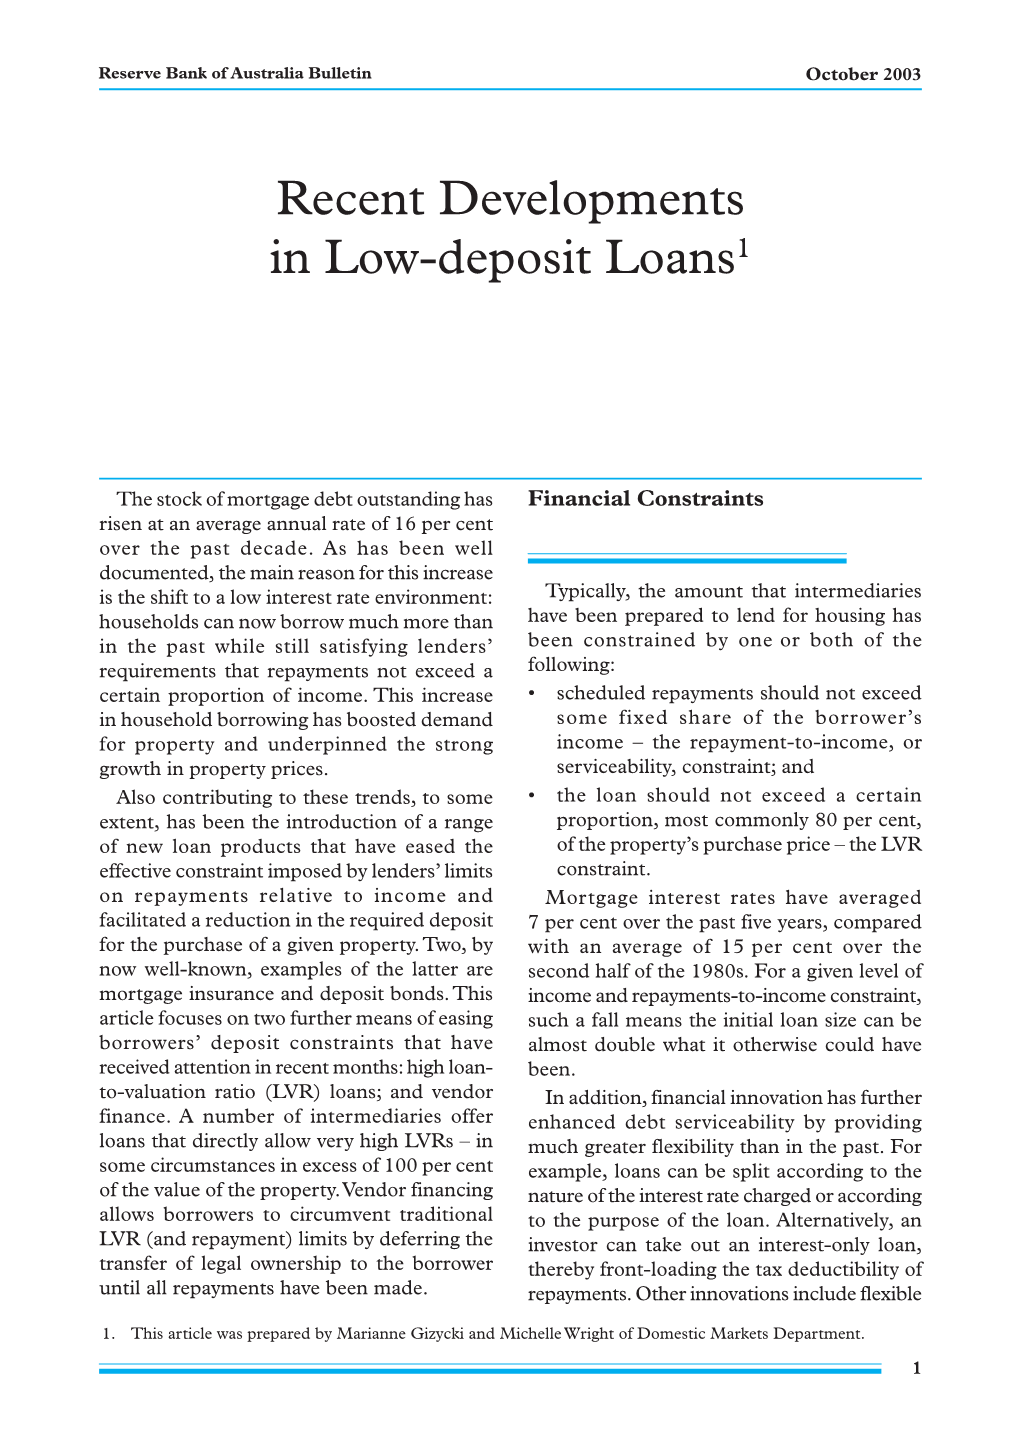 Recent Developments in Low-Deposit Loans1